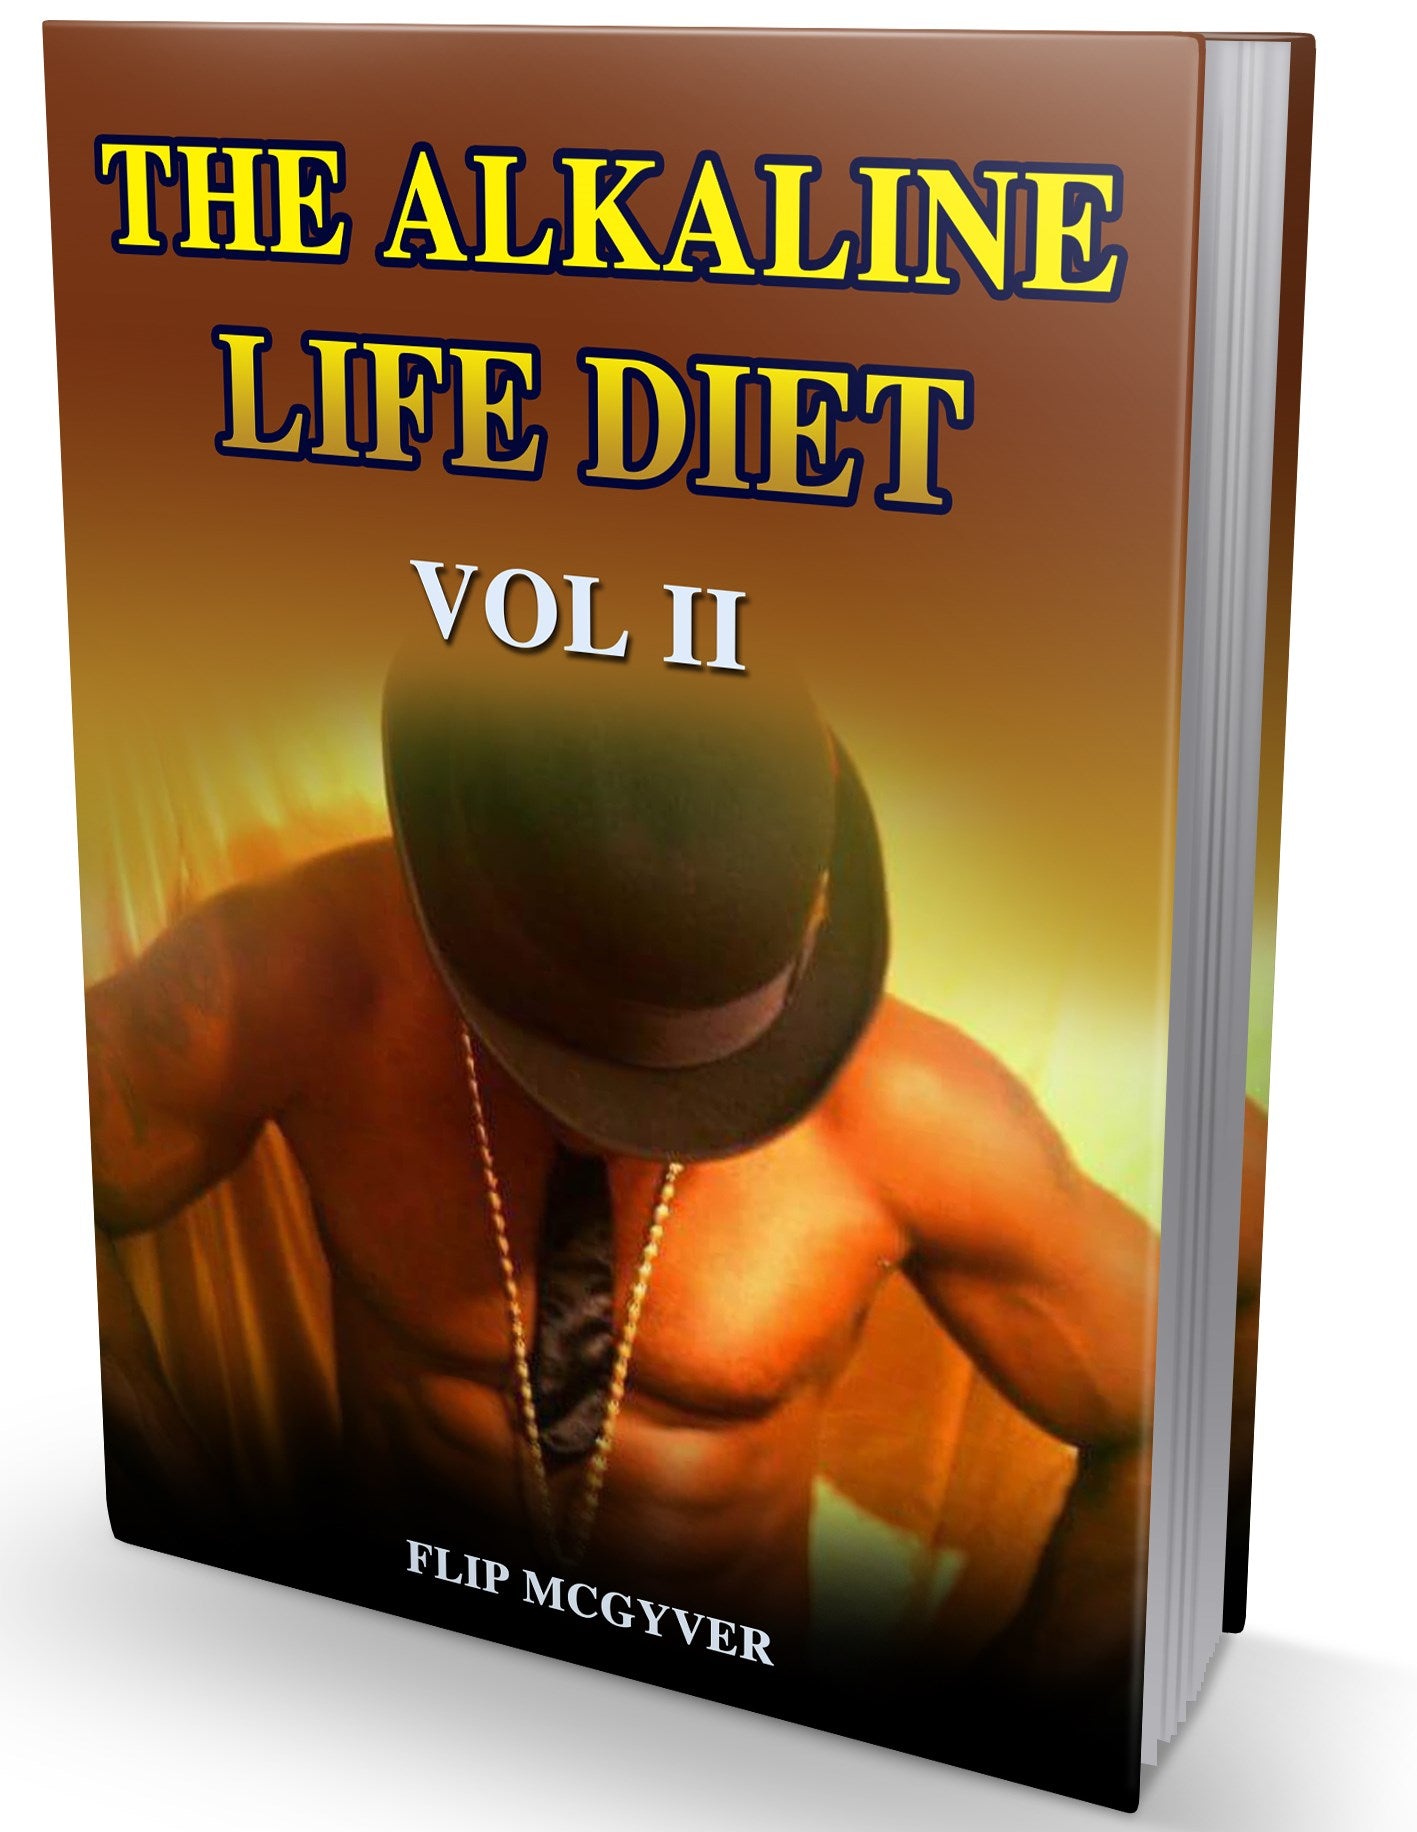 The Alkaline Life Diet Vol 2